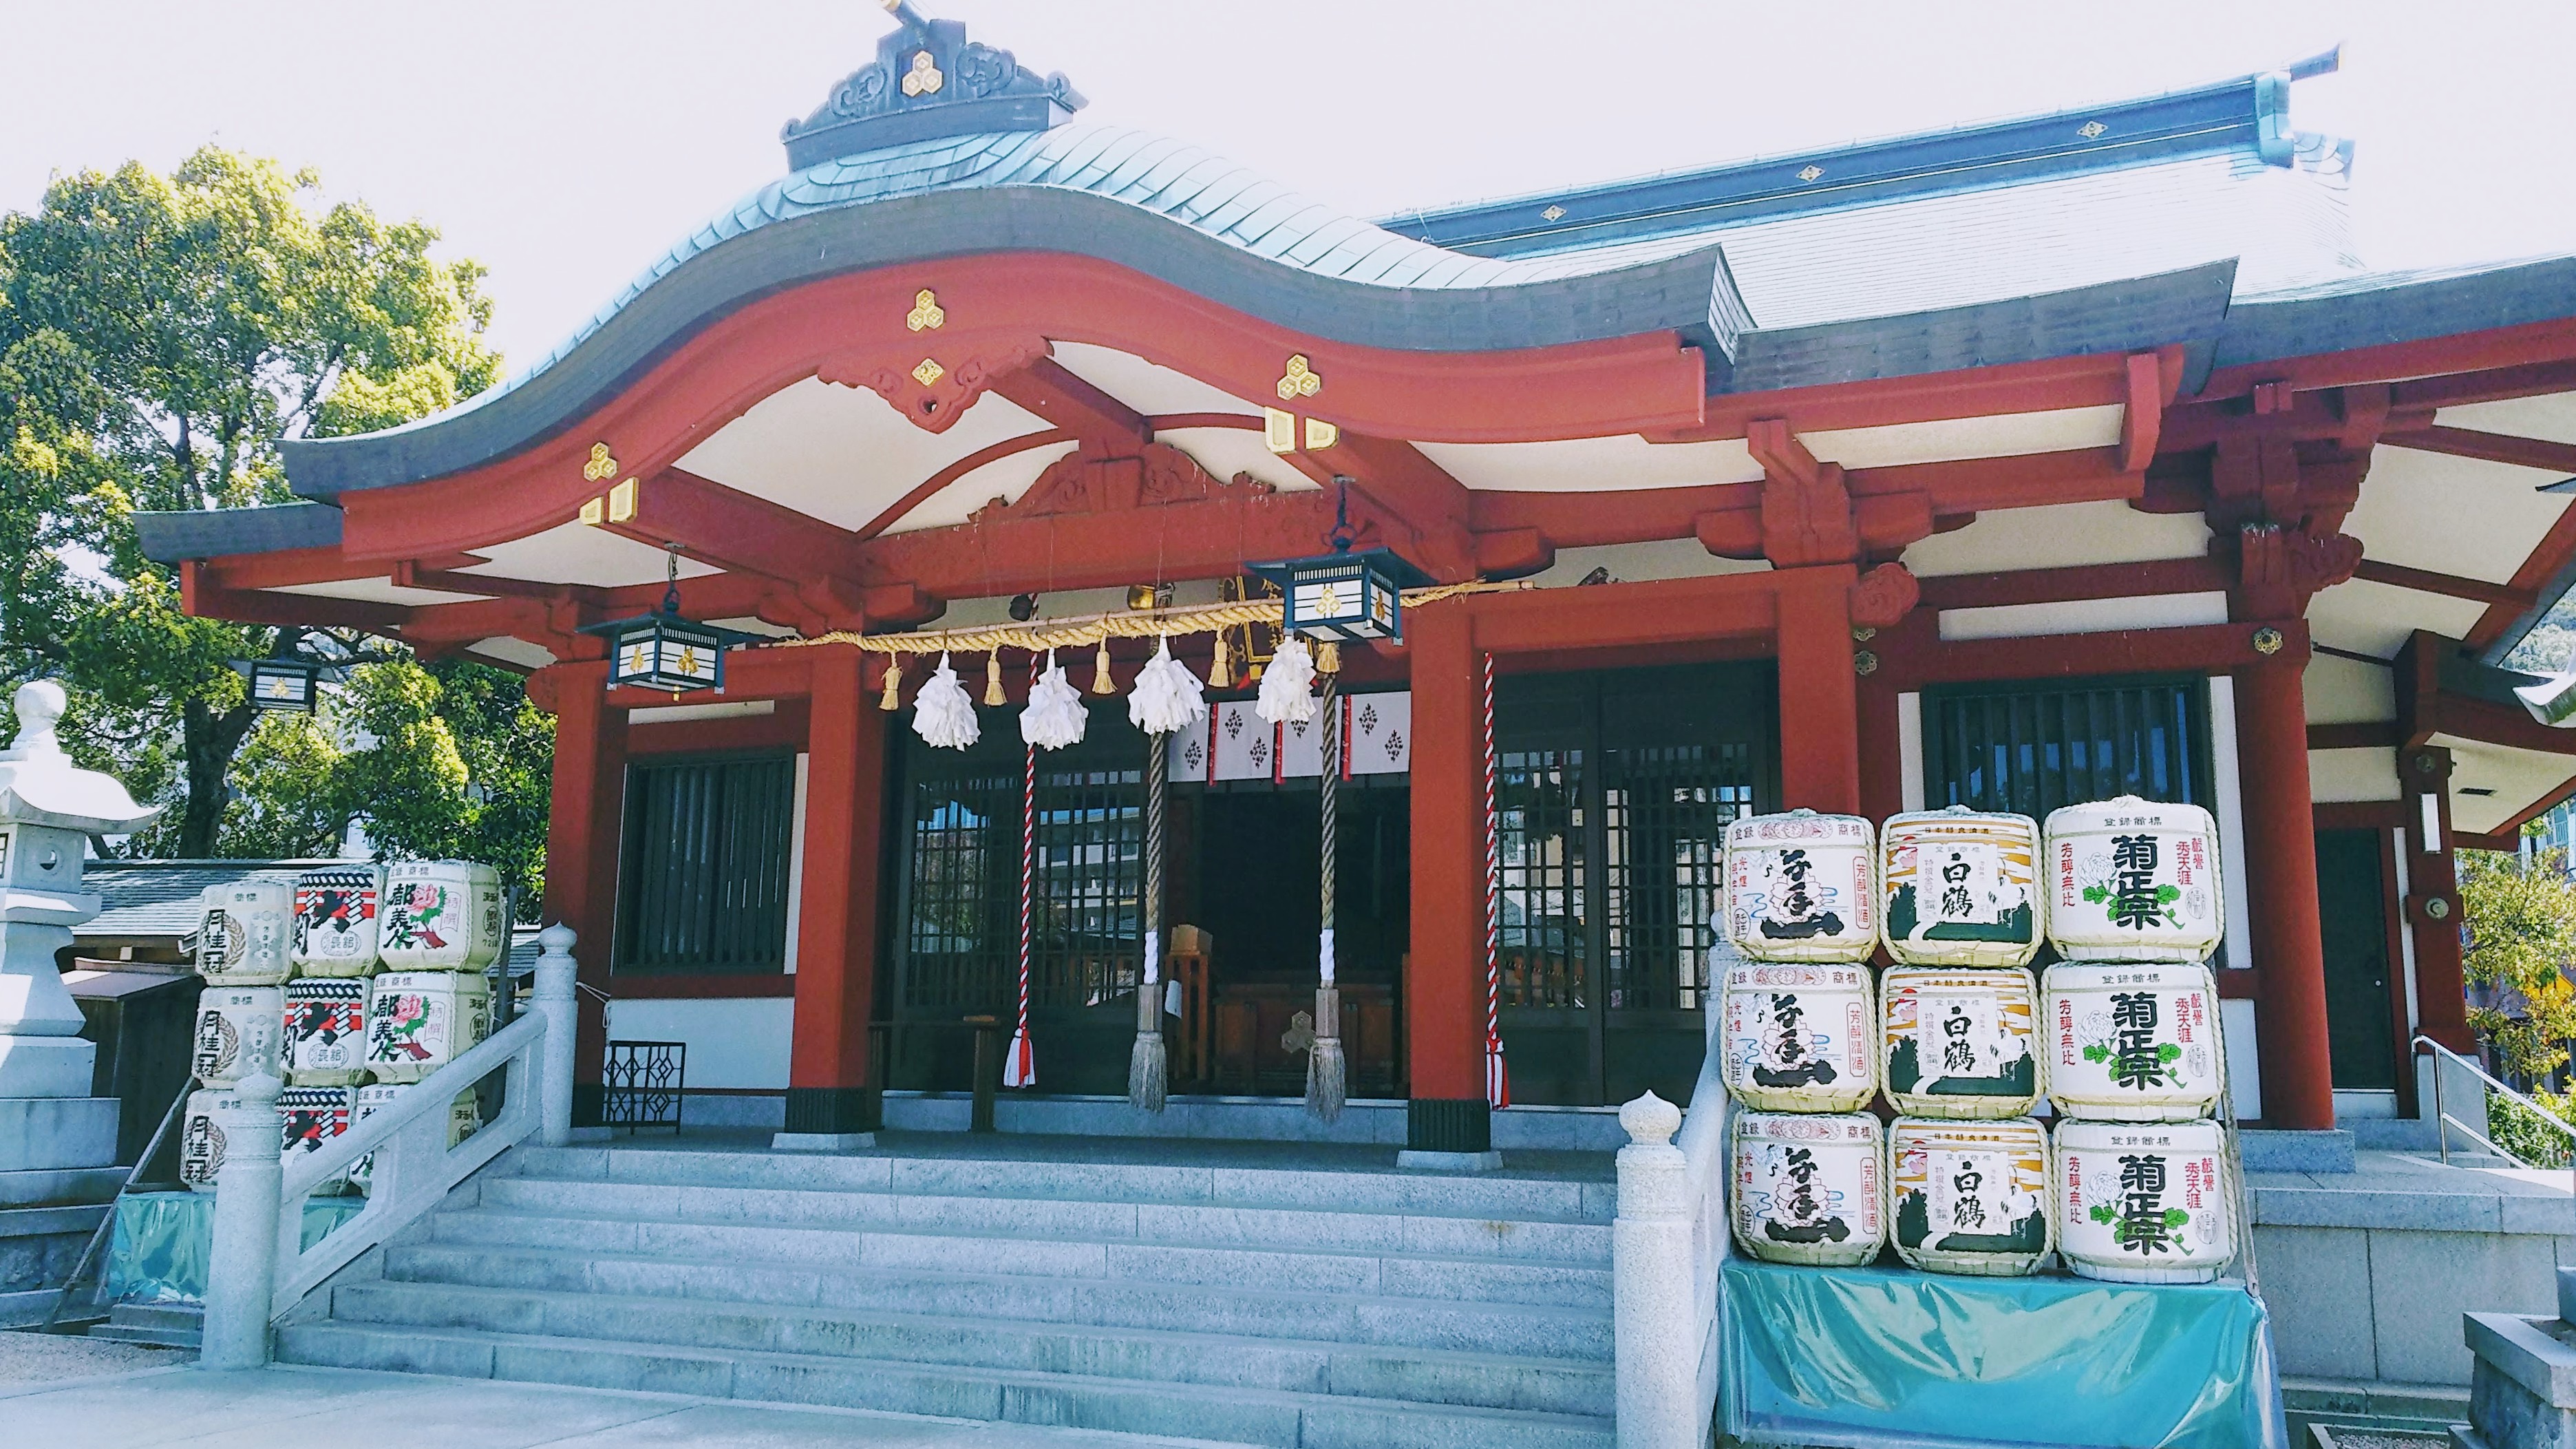 兵庫県洲本市 厳島神社は 淡路島弁財天 で親しまれる神社 境内にはかわいい狸の神さまも